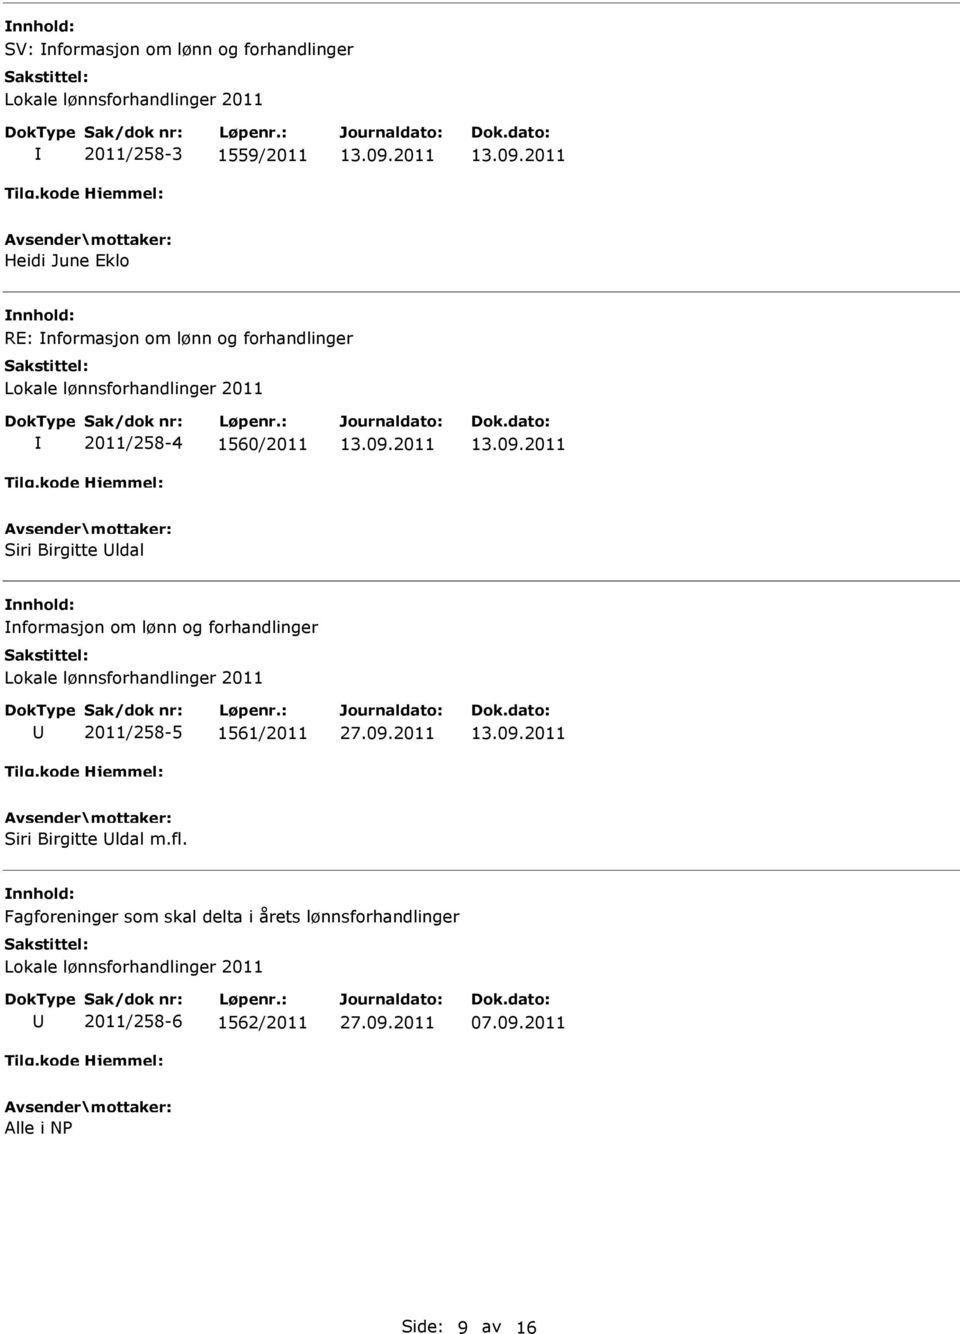 om lønn og forhandlinger 2011/258-5 1561/2011 Siri Birgitte ldal m.fl.